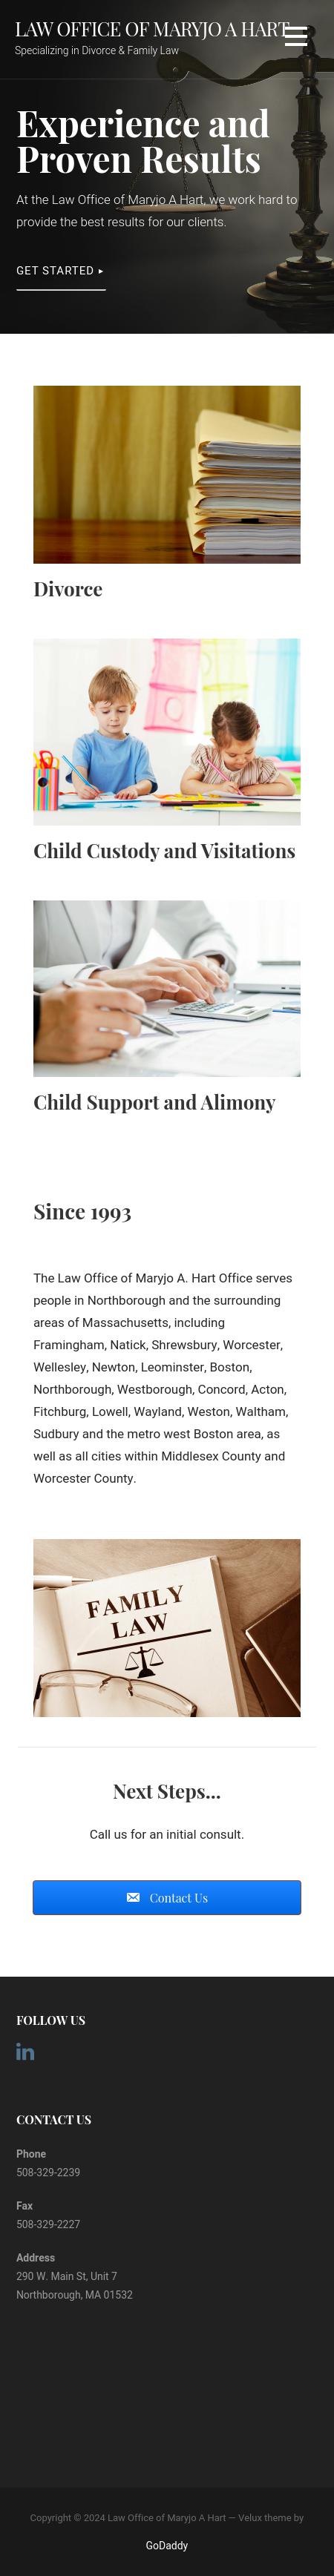 Koufman & Frederick, L.L.P. - Boston MA Lawyers